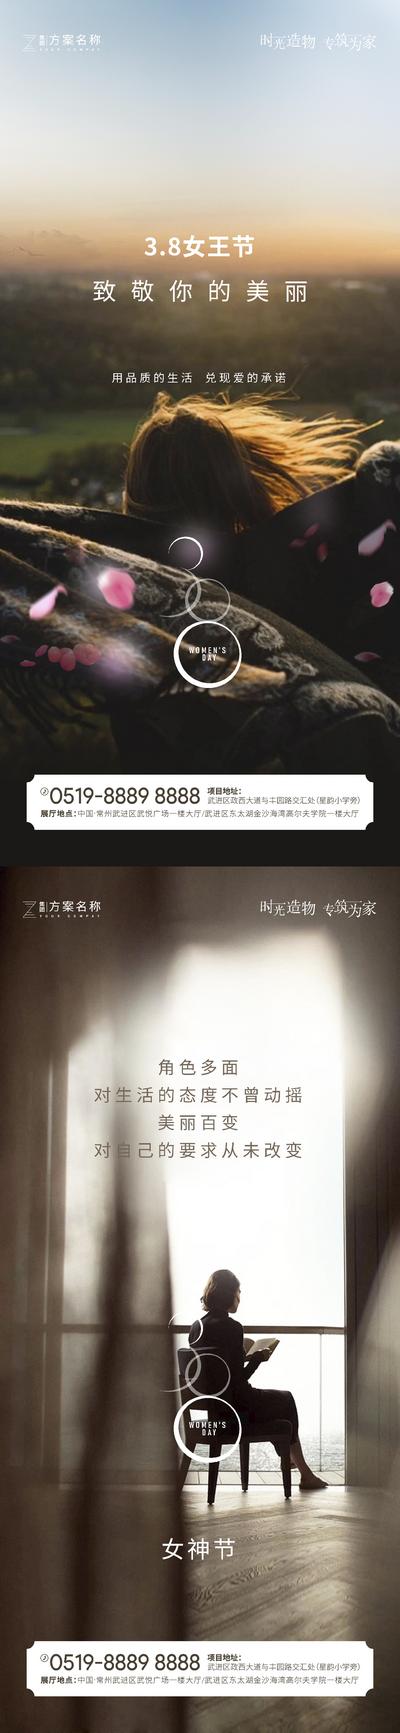 南门网 海报 房地产 公历节日 女神节 妇女节 女王节 3.8 女性